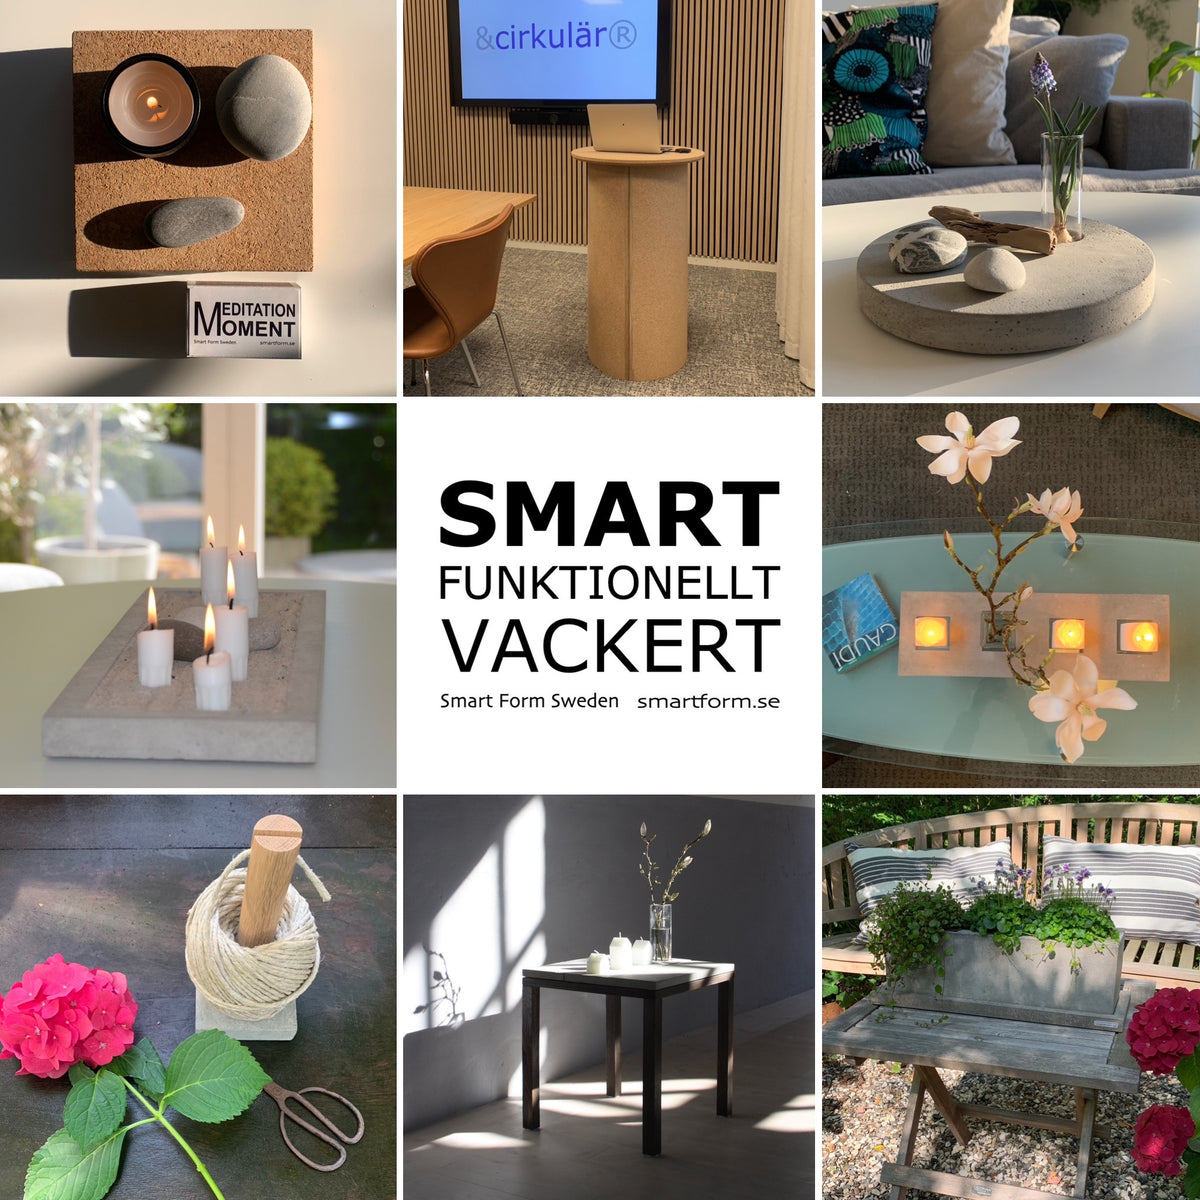 Smart Form Sweden, Robert Bengtsson, inredning, möbler, hem, hemmiljö, kontor, kontorsmiljö, offentligmiljö, trädgård, skandinavisk design, design, minimalistiskt, smart, funktionellt, vackert